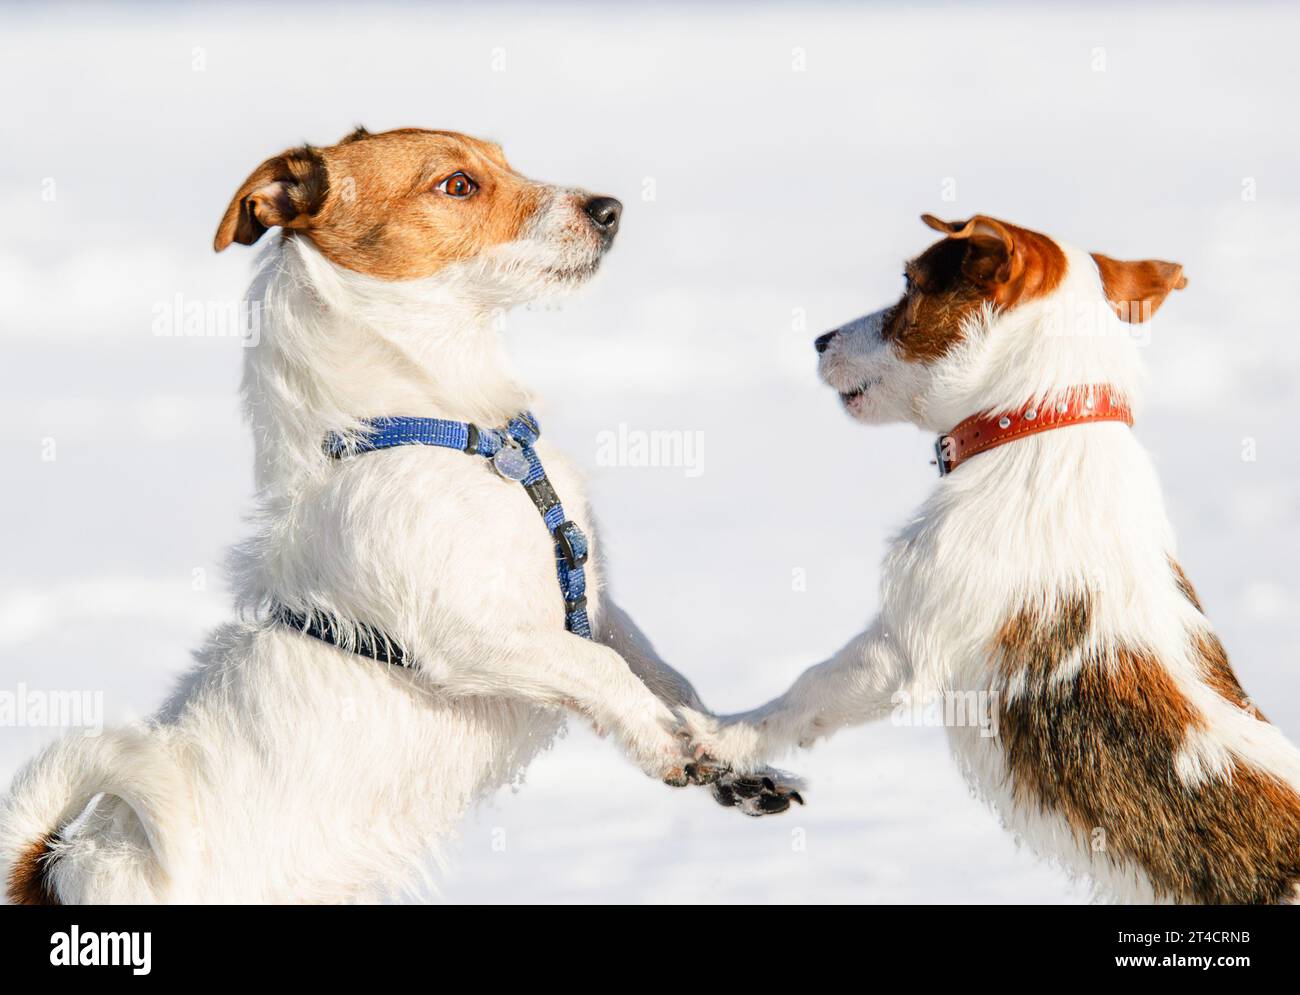 Corsi di formazione per cani e di socializzazione degli animali domestici. Due cani felici che giocano insieme il giorno d'inverno. Foto Stock